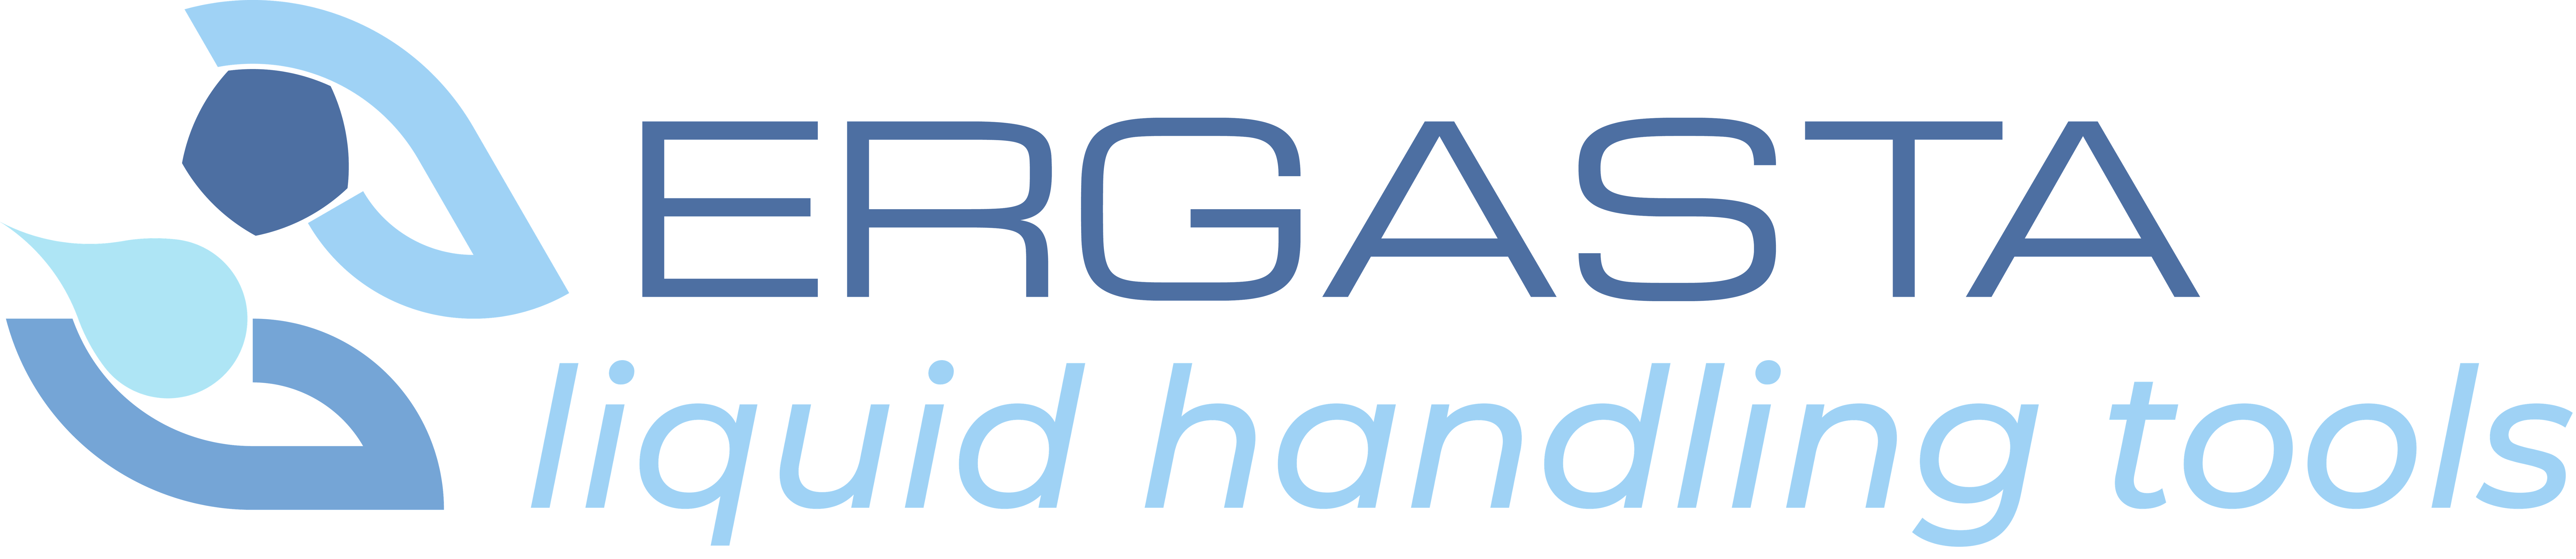 ERGASTA - liquid handling tools